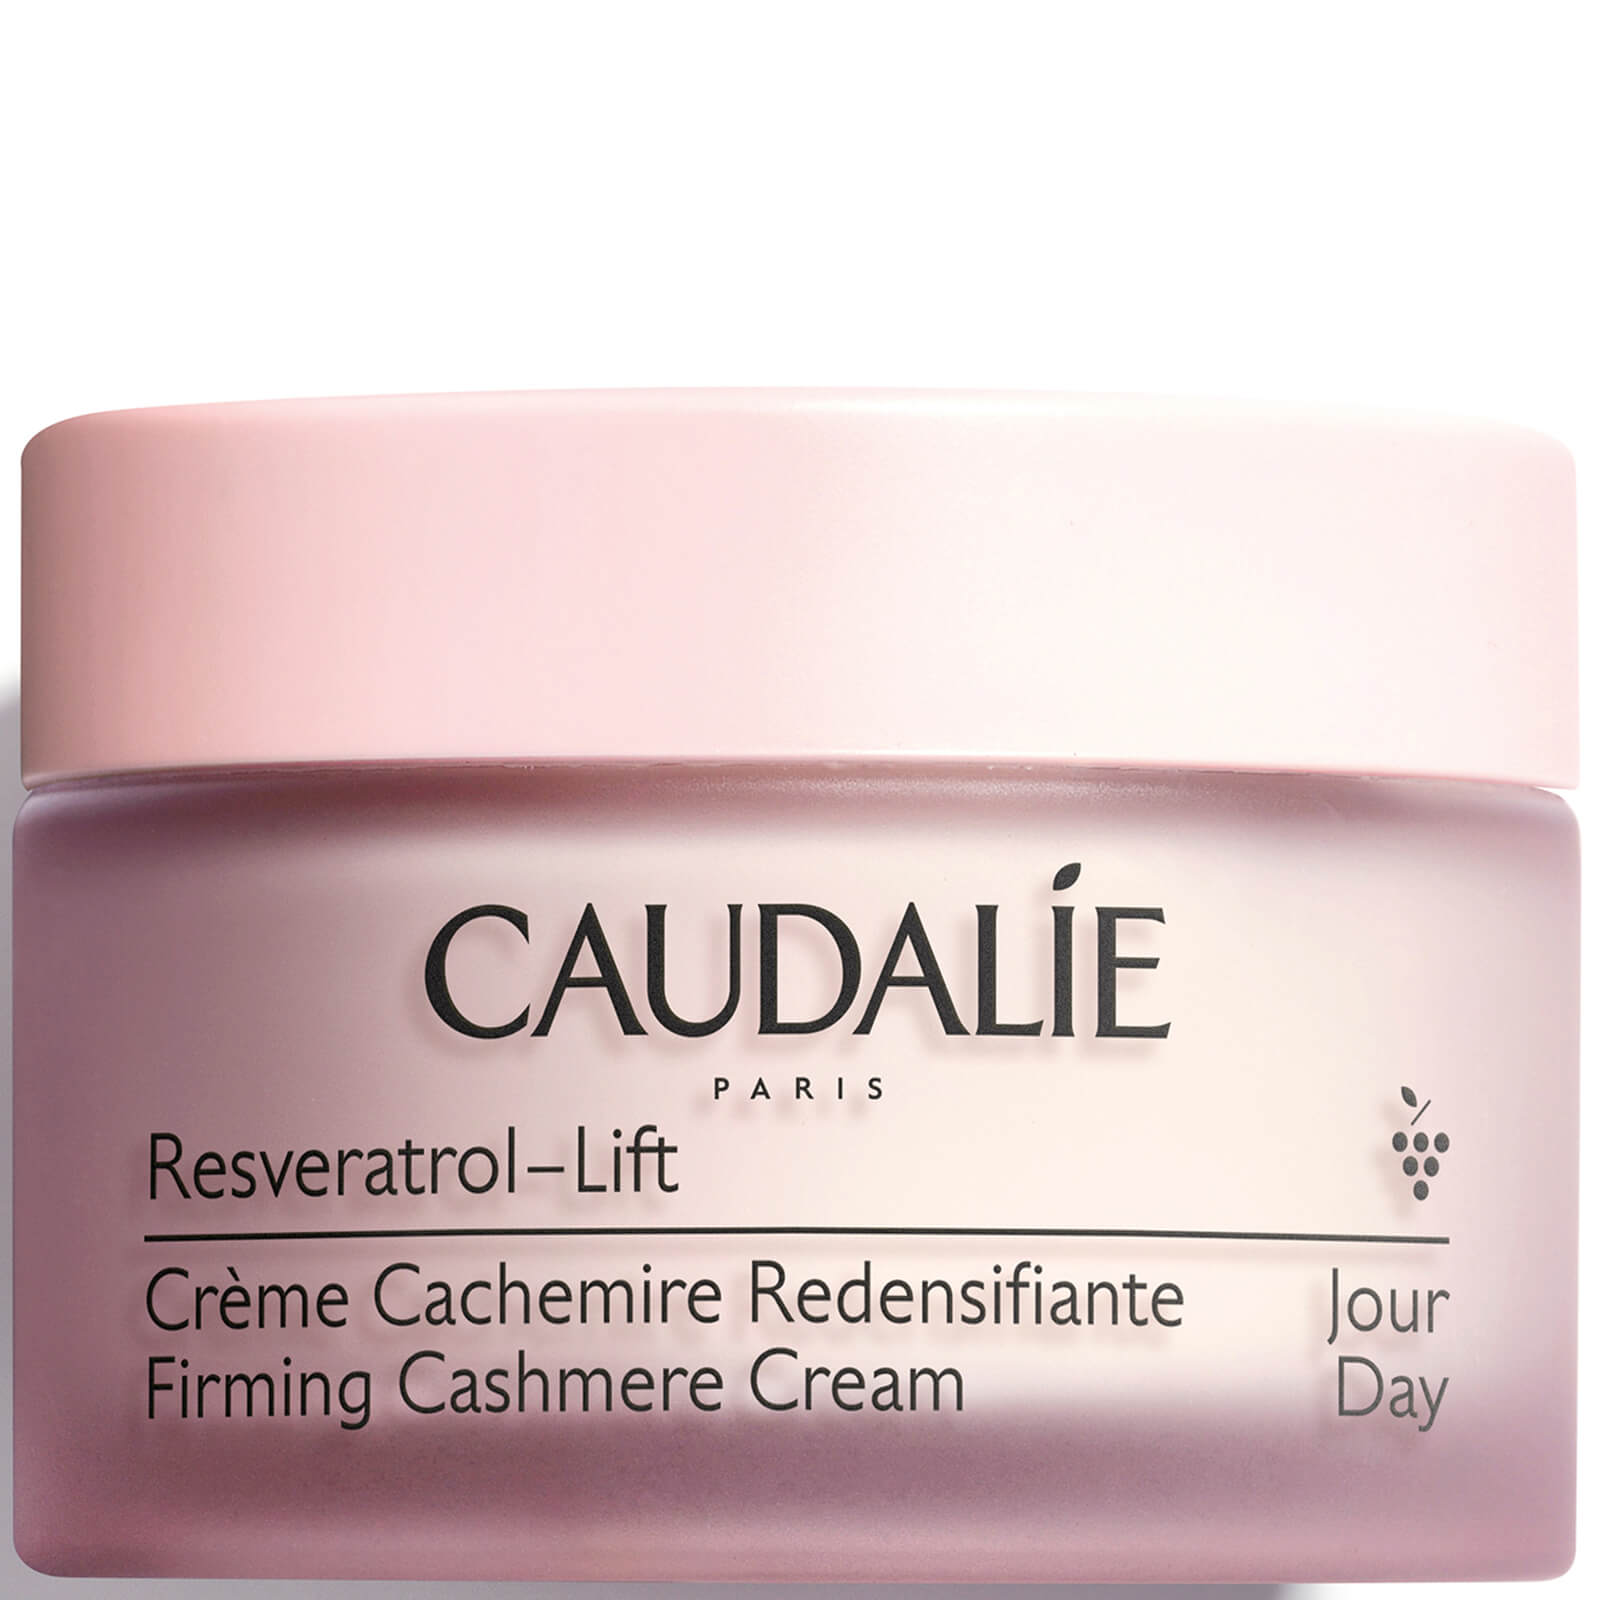 Caudalie Resvératrol [lift] Firming Cashmere Cream 50ml